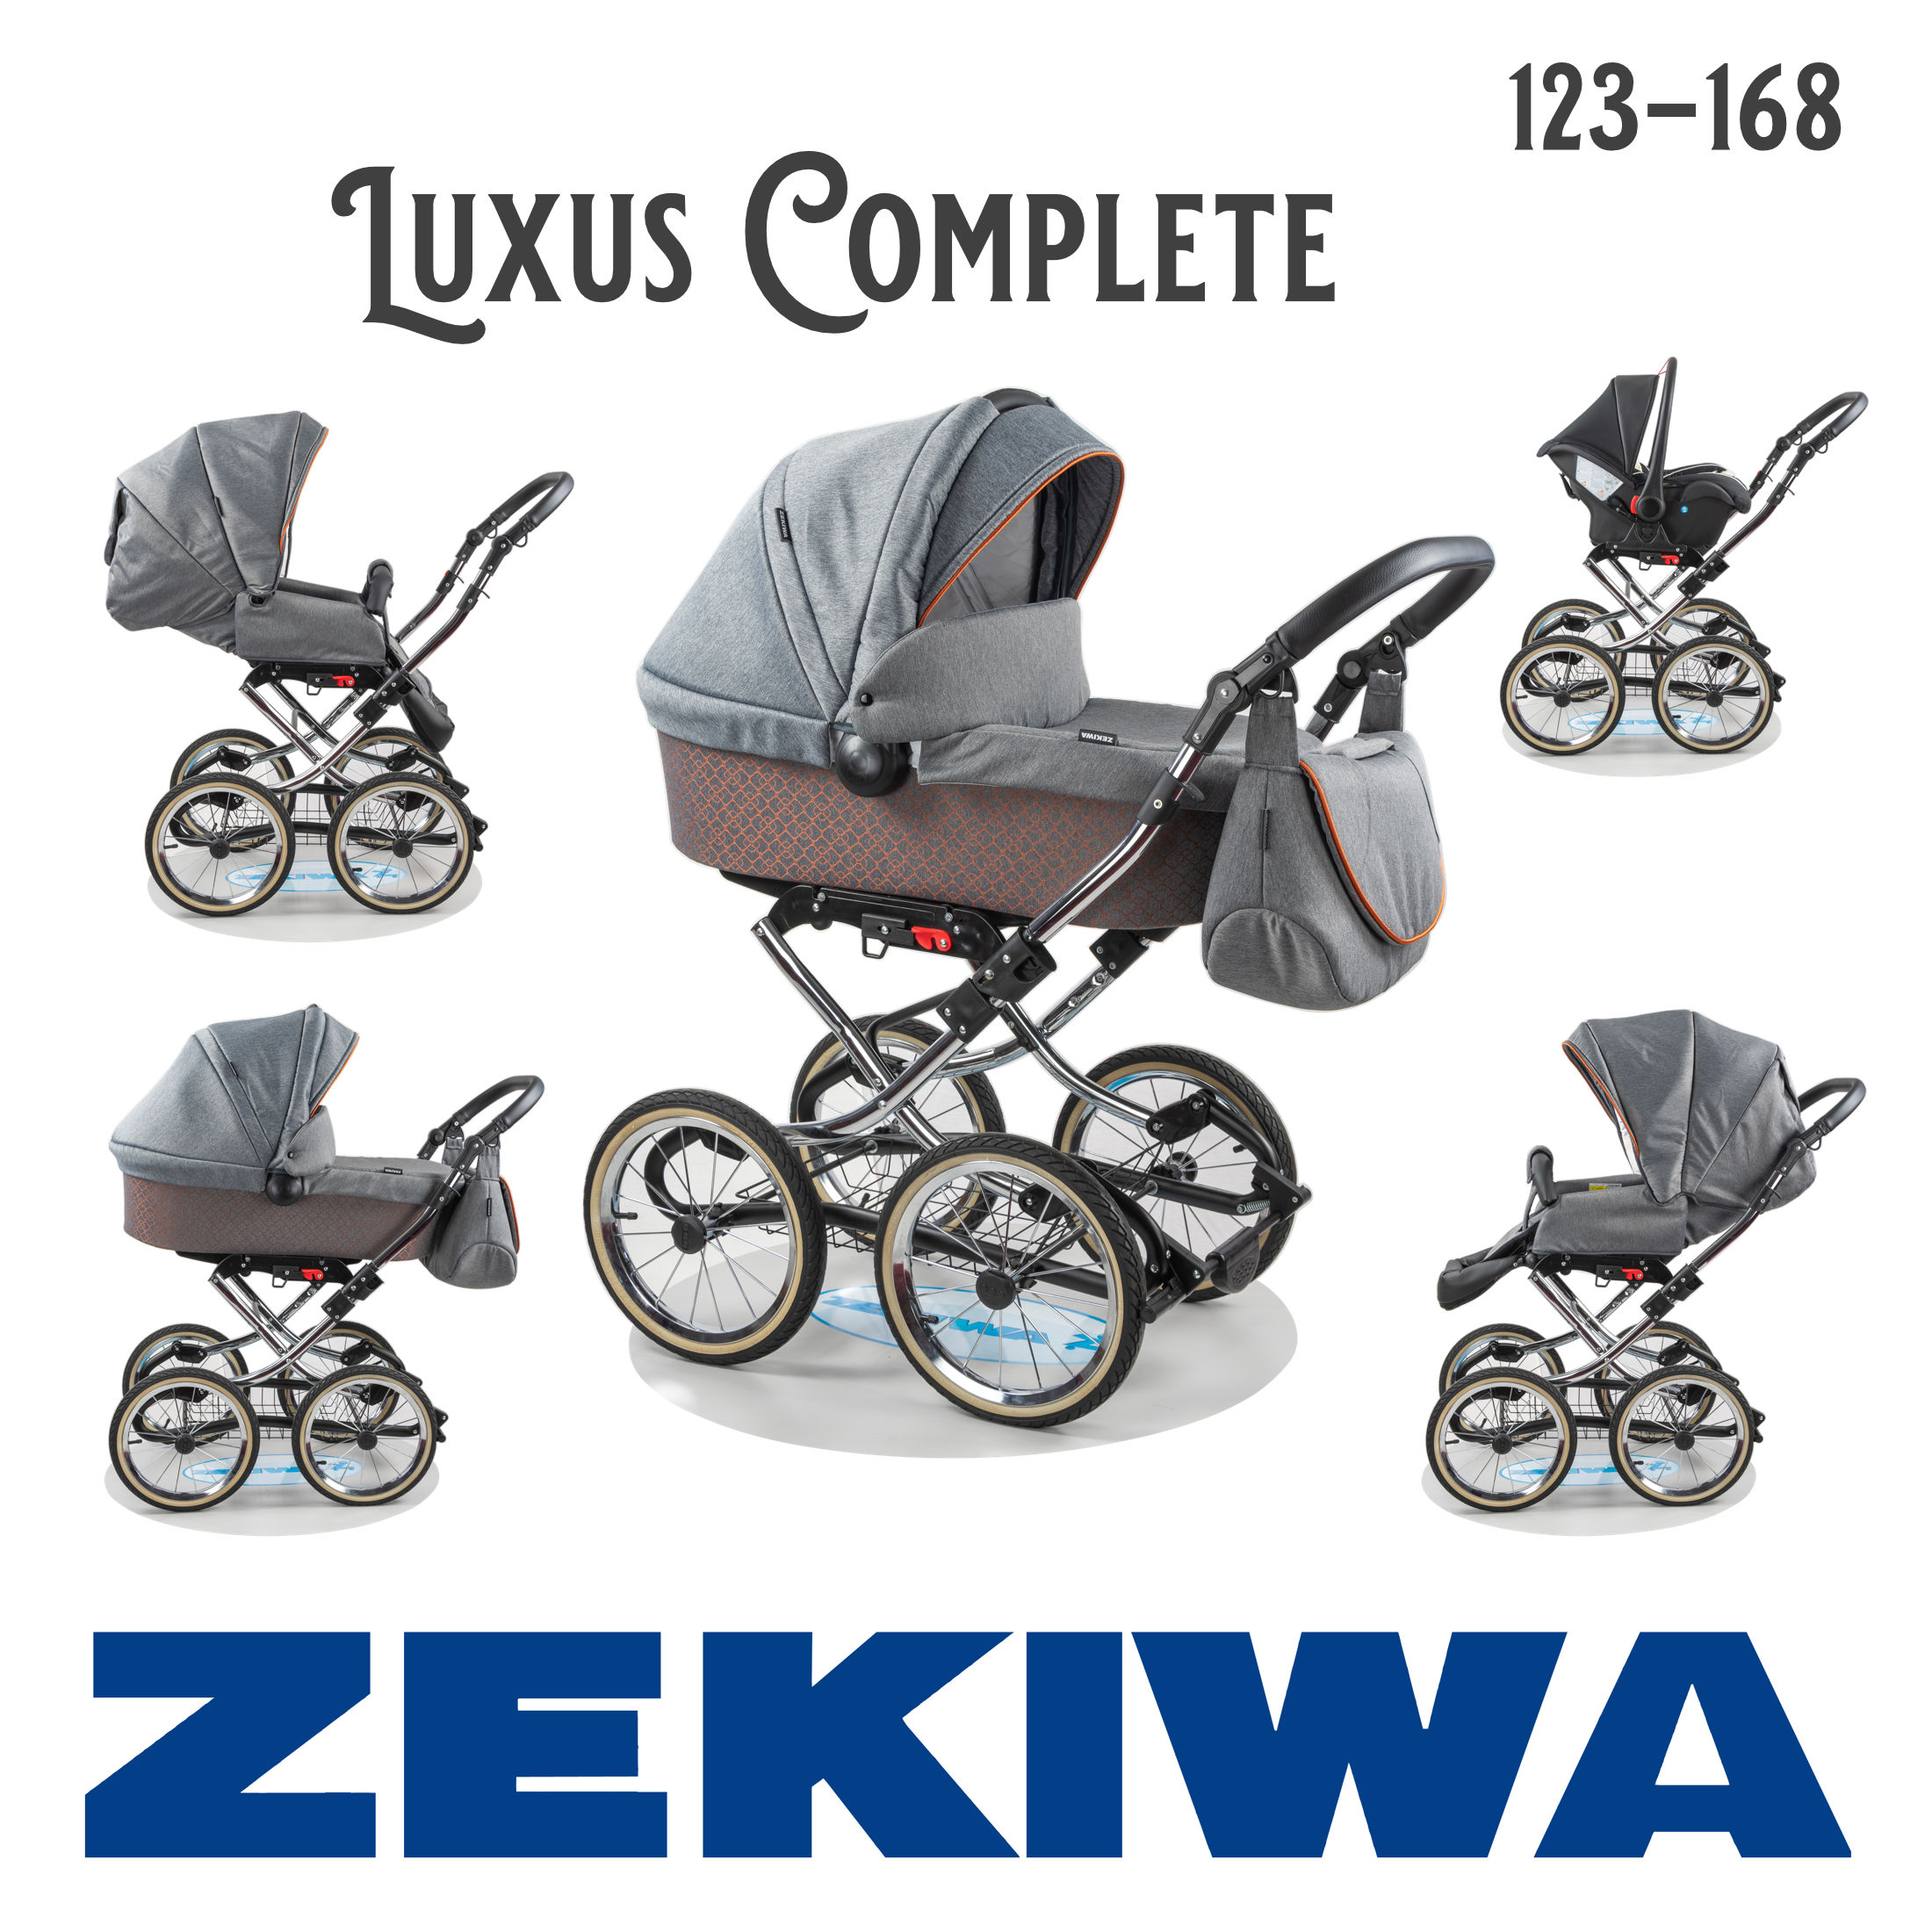 ZEKIWA Luxus Complete Brokat